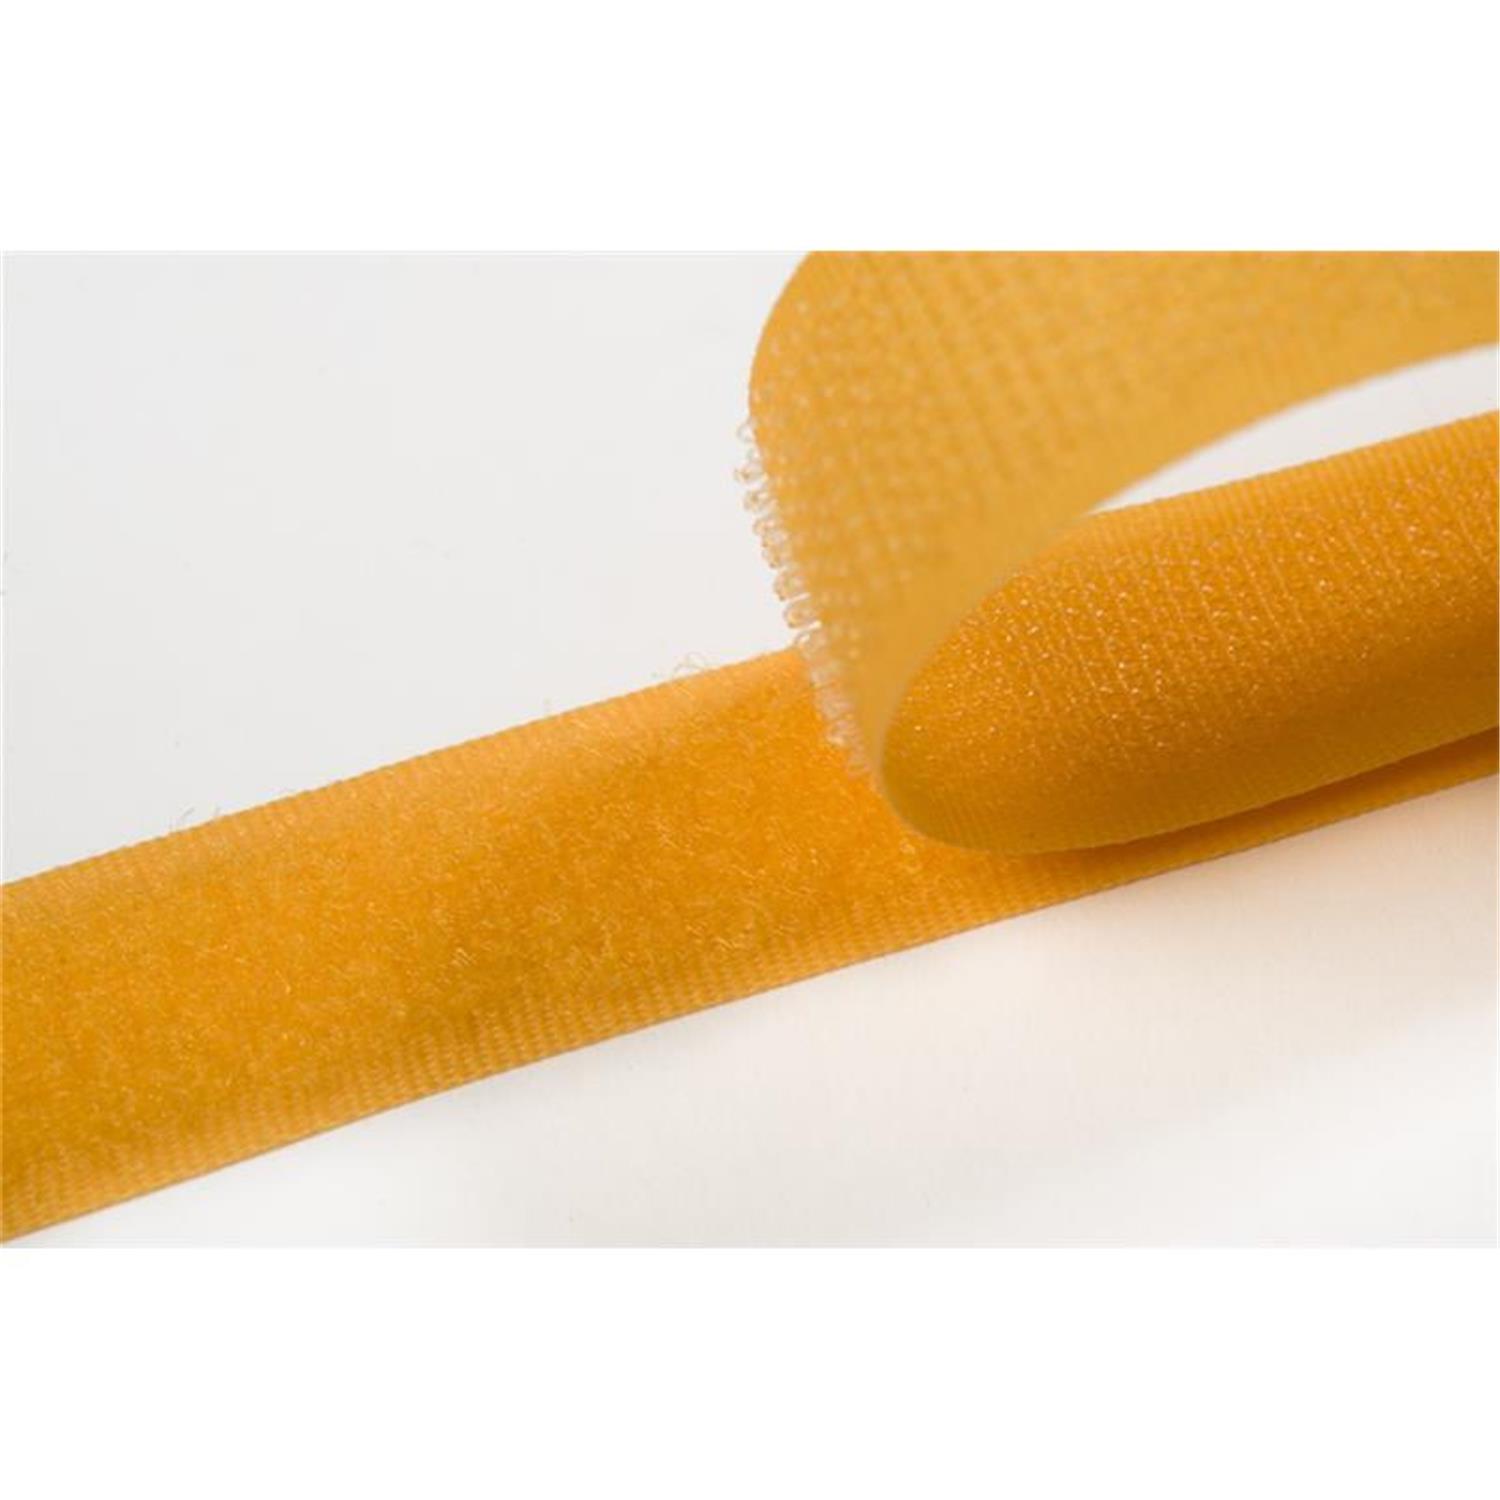 Klettband zum aufnähen, 20 mm, gelb #16 25 Meter